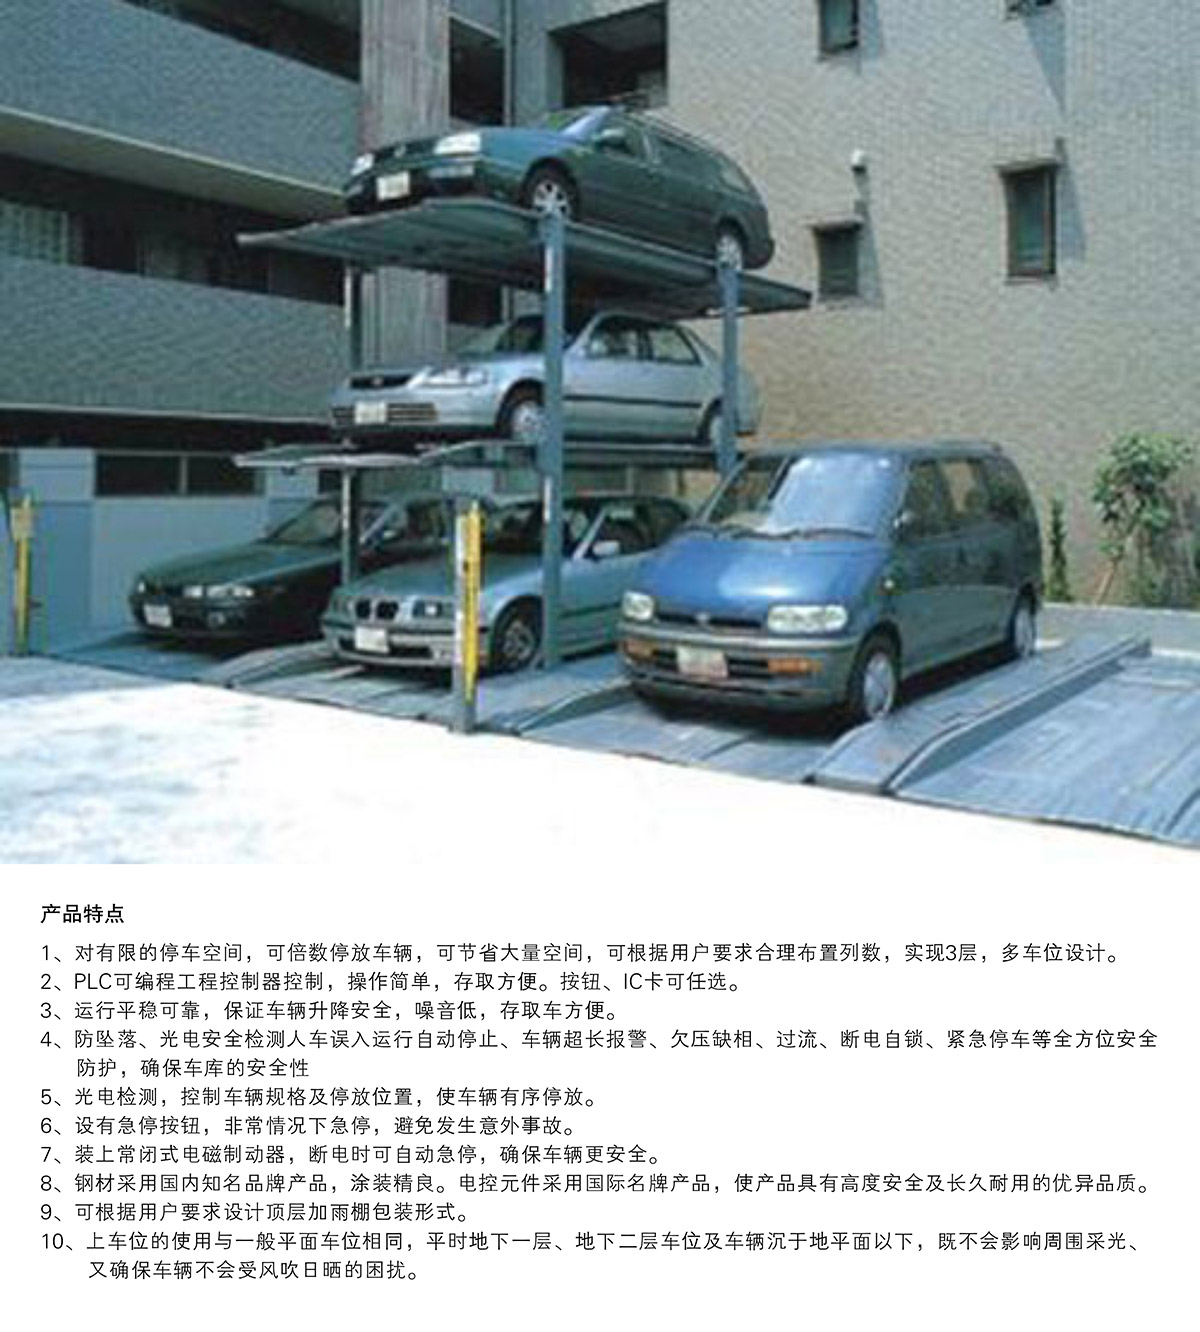 机械停车位PJS3D2三层地坑简易升降立体停车产品特点.jpg